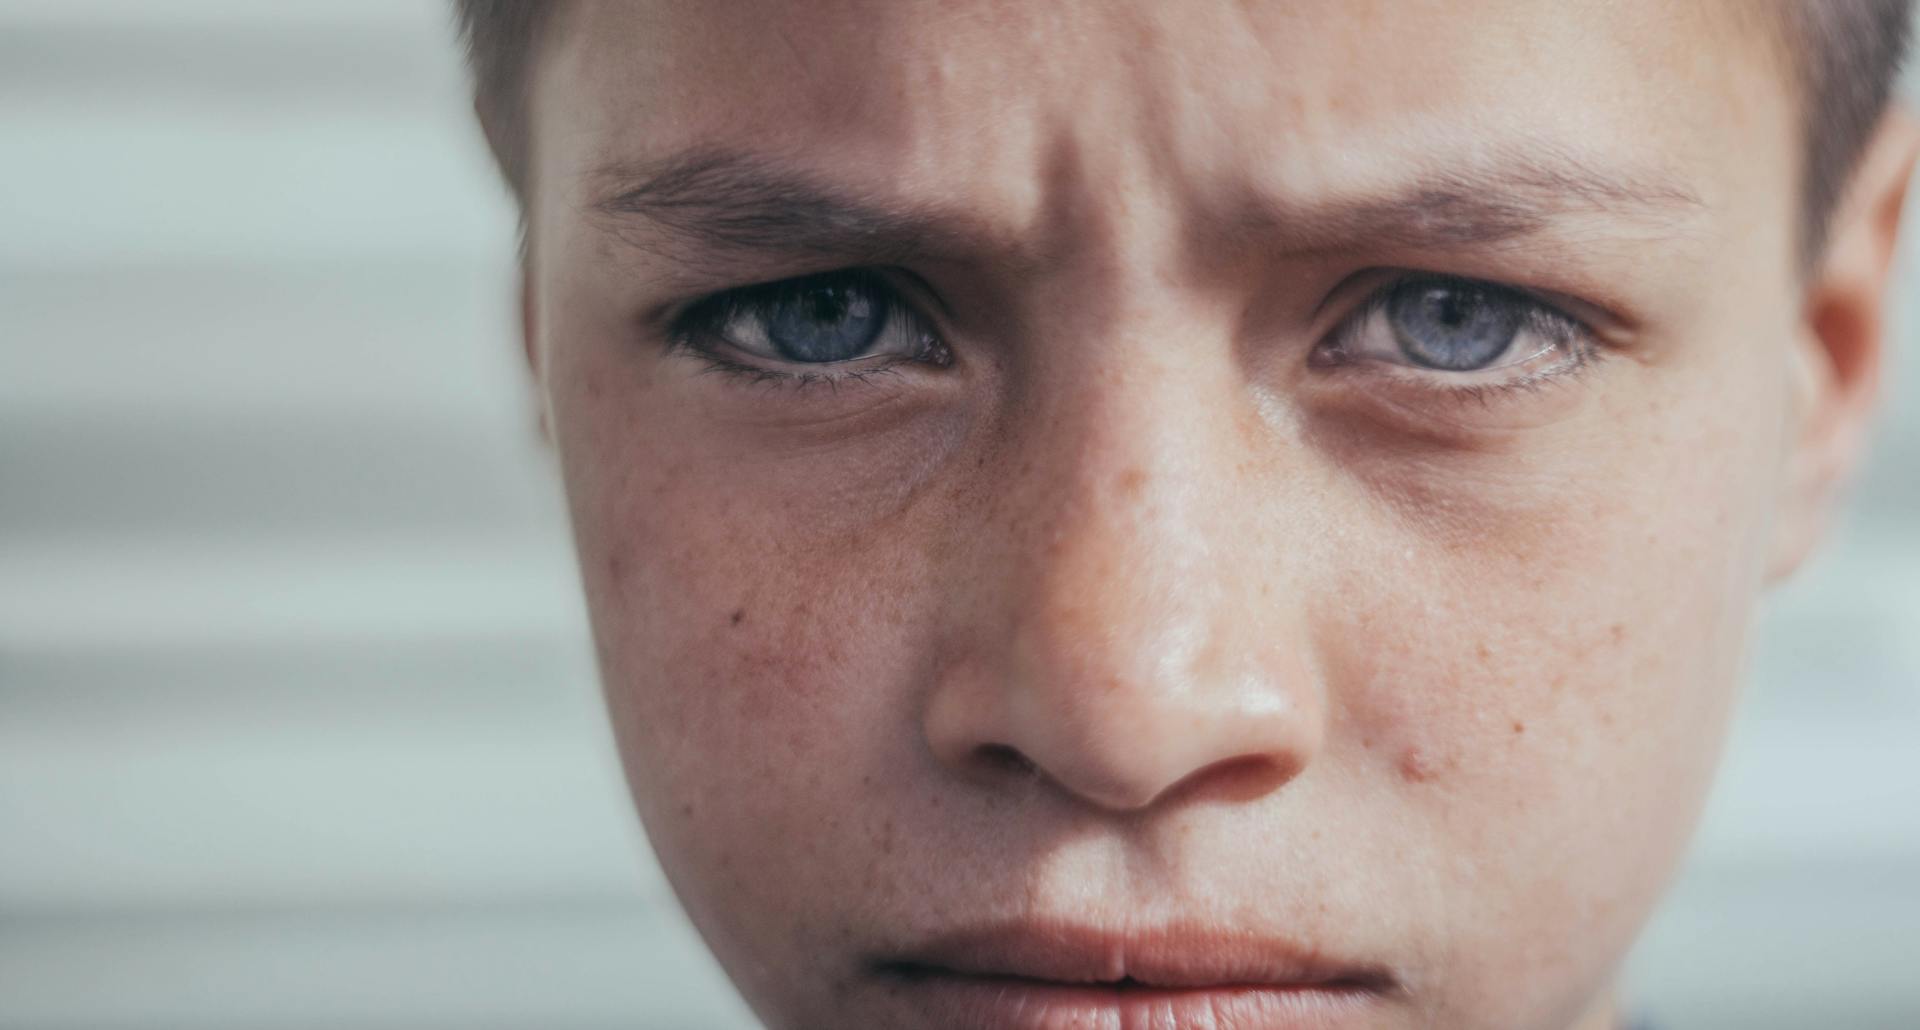 A close-up of an upset boy | Source: Pexels